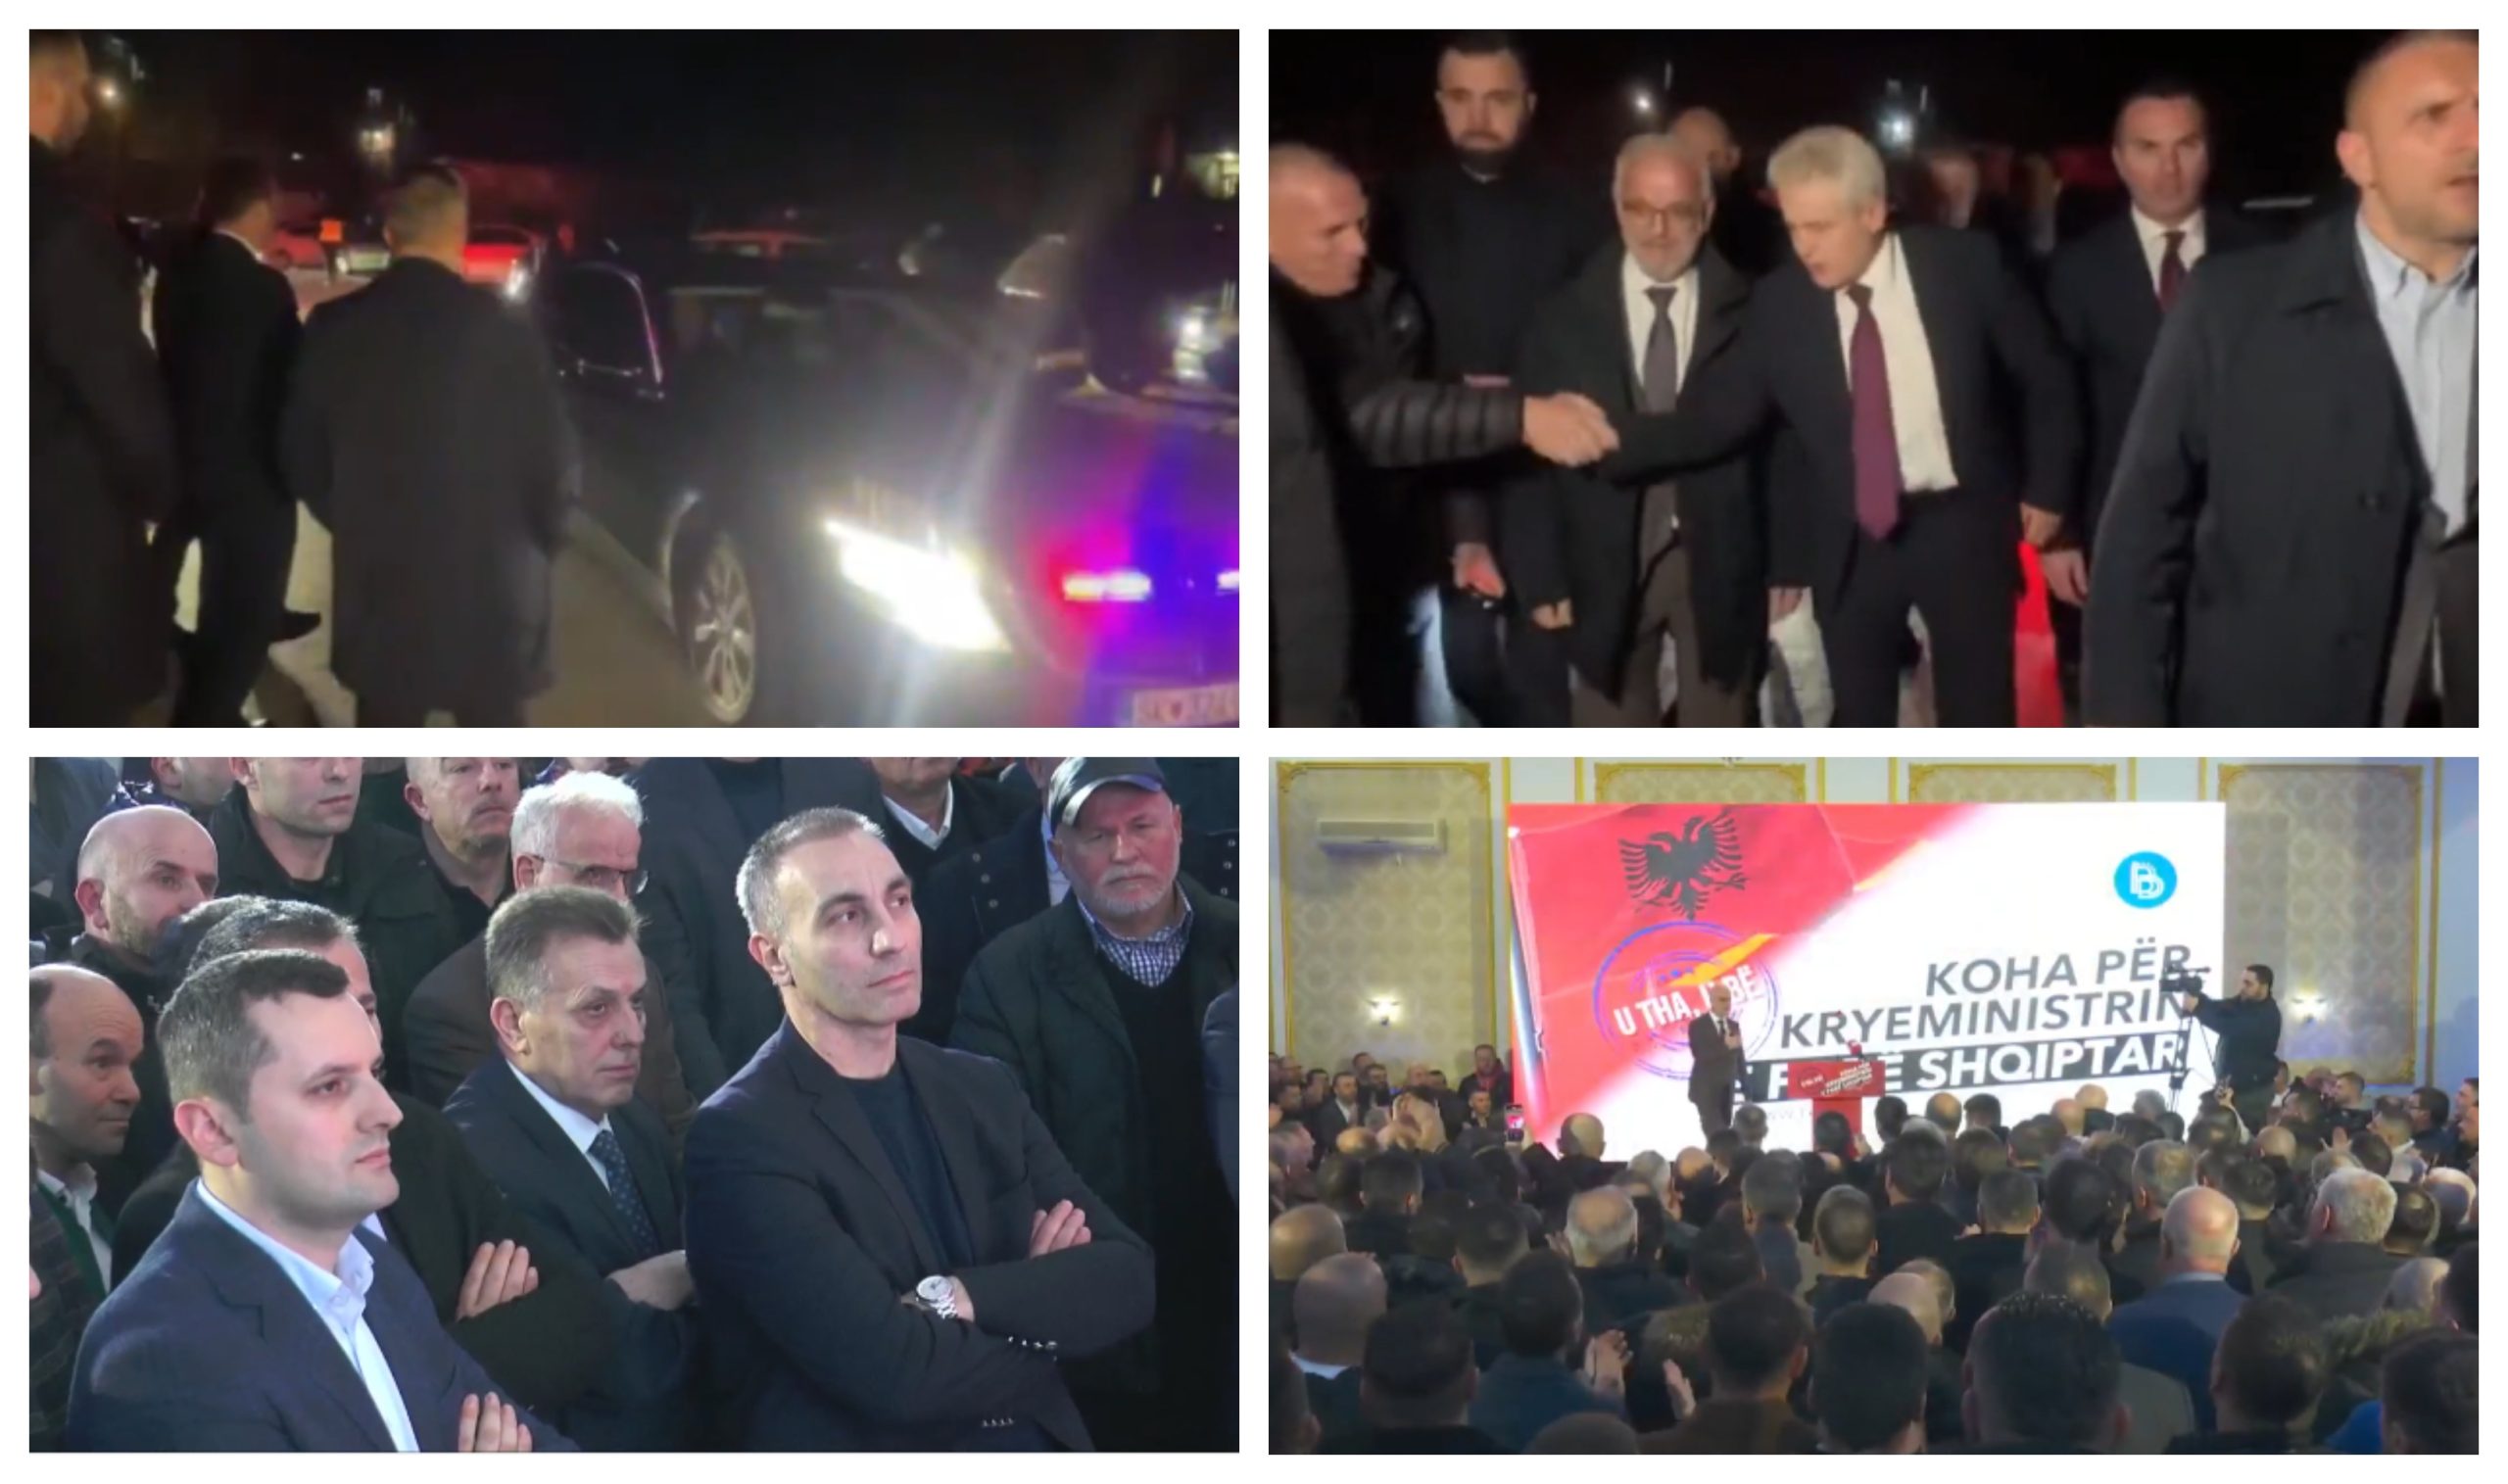 ДУИ над Македонија за премиерот: Талат Џафери во засилена предизборна кампања со Али Ахмети